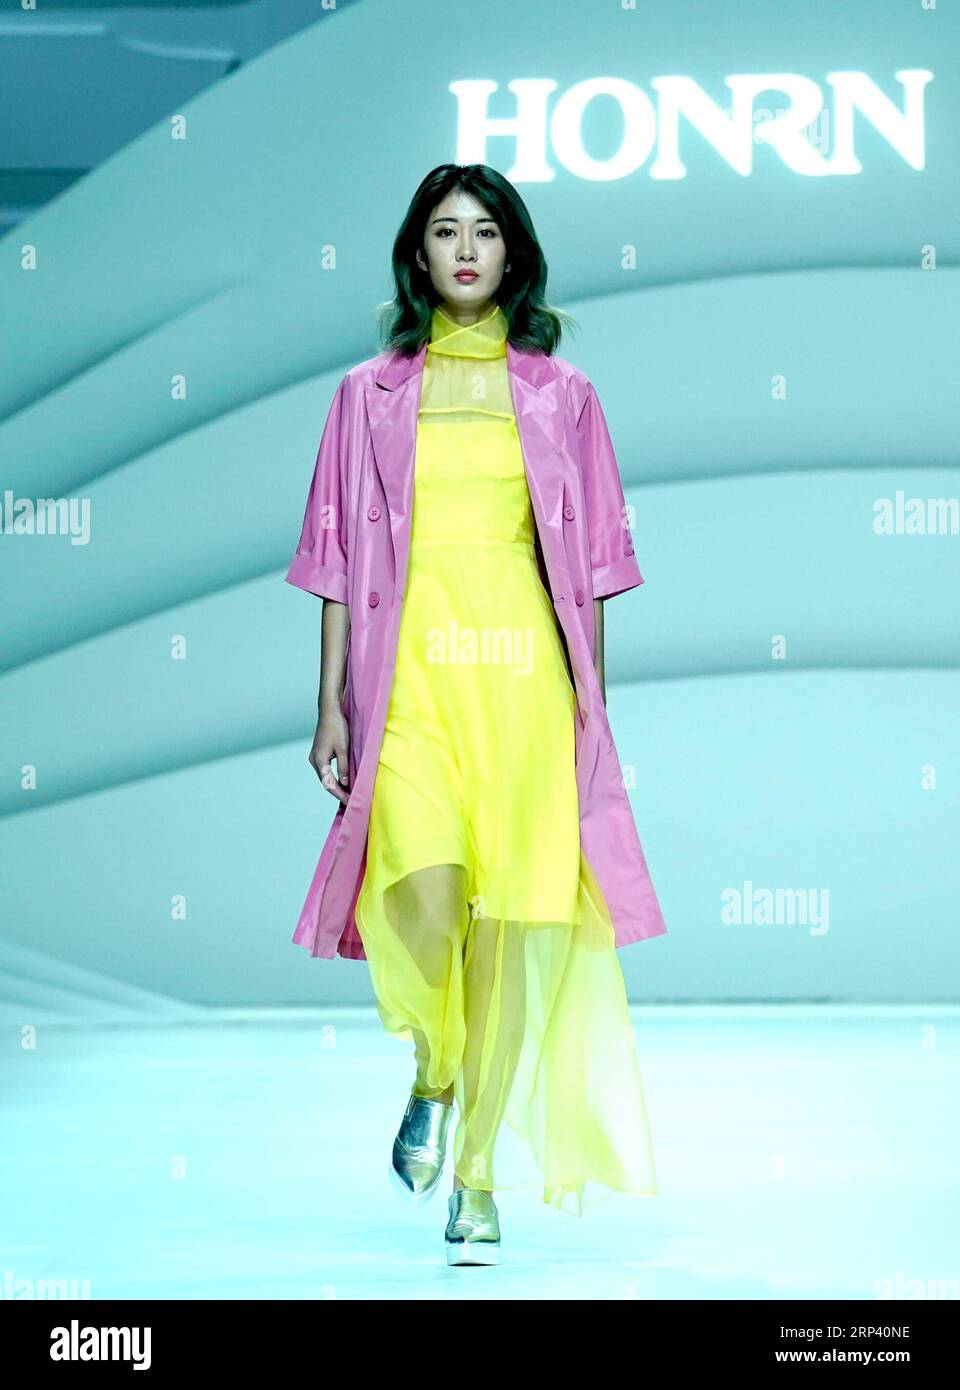 (181021) -- WUHAN, 21 octobre 2018 (Xinhua) -- Un modèle présente une création de la marque chinoise Honrn lors du salon d'ouverture de la semaine de la mode Wuhan 2018 à Wuhan, capitale de la province du Hubei en Chine centrale, le 20 octobre 2018. L'événement de cinq jours a débuté samedi dans une zone de mode nommée Red T à Wuhan. (Xinhua/Chen Jianli)(gxn) CHINA-HUBEI-WUHAN-FASHION WEEK (CN) PUBLICATIONxNOTxINxCHN Banque D'Images